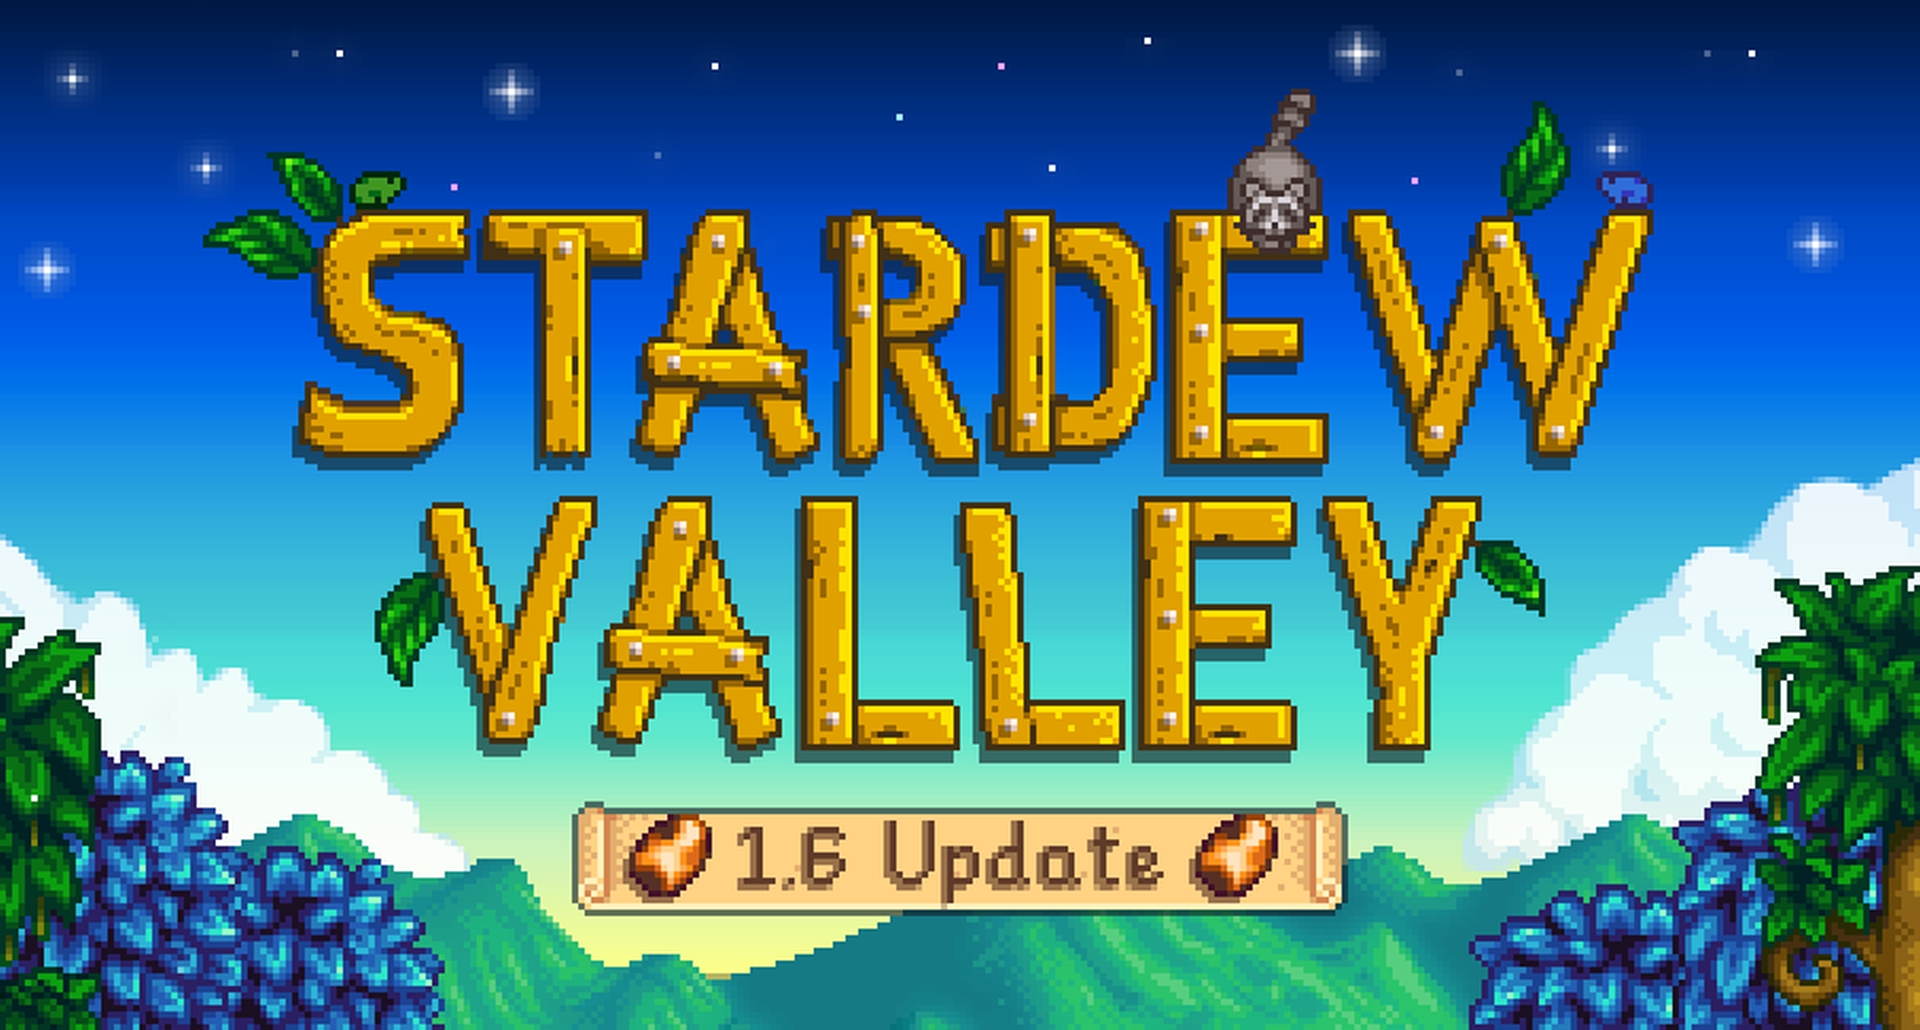 Stardew Valley update 1.6 verschijnt op 16 maart voor PC, ontwikkelaar kondigt aan